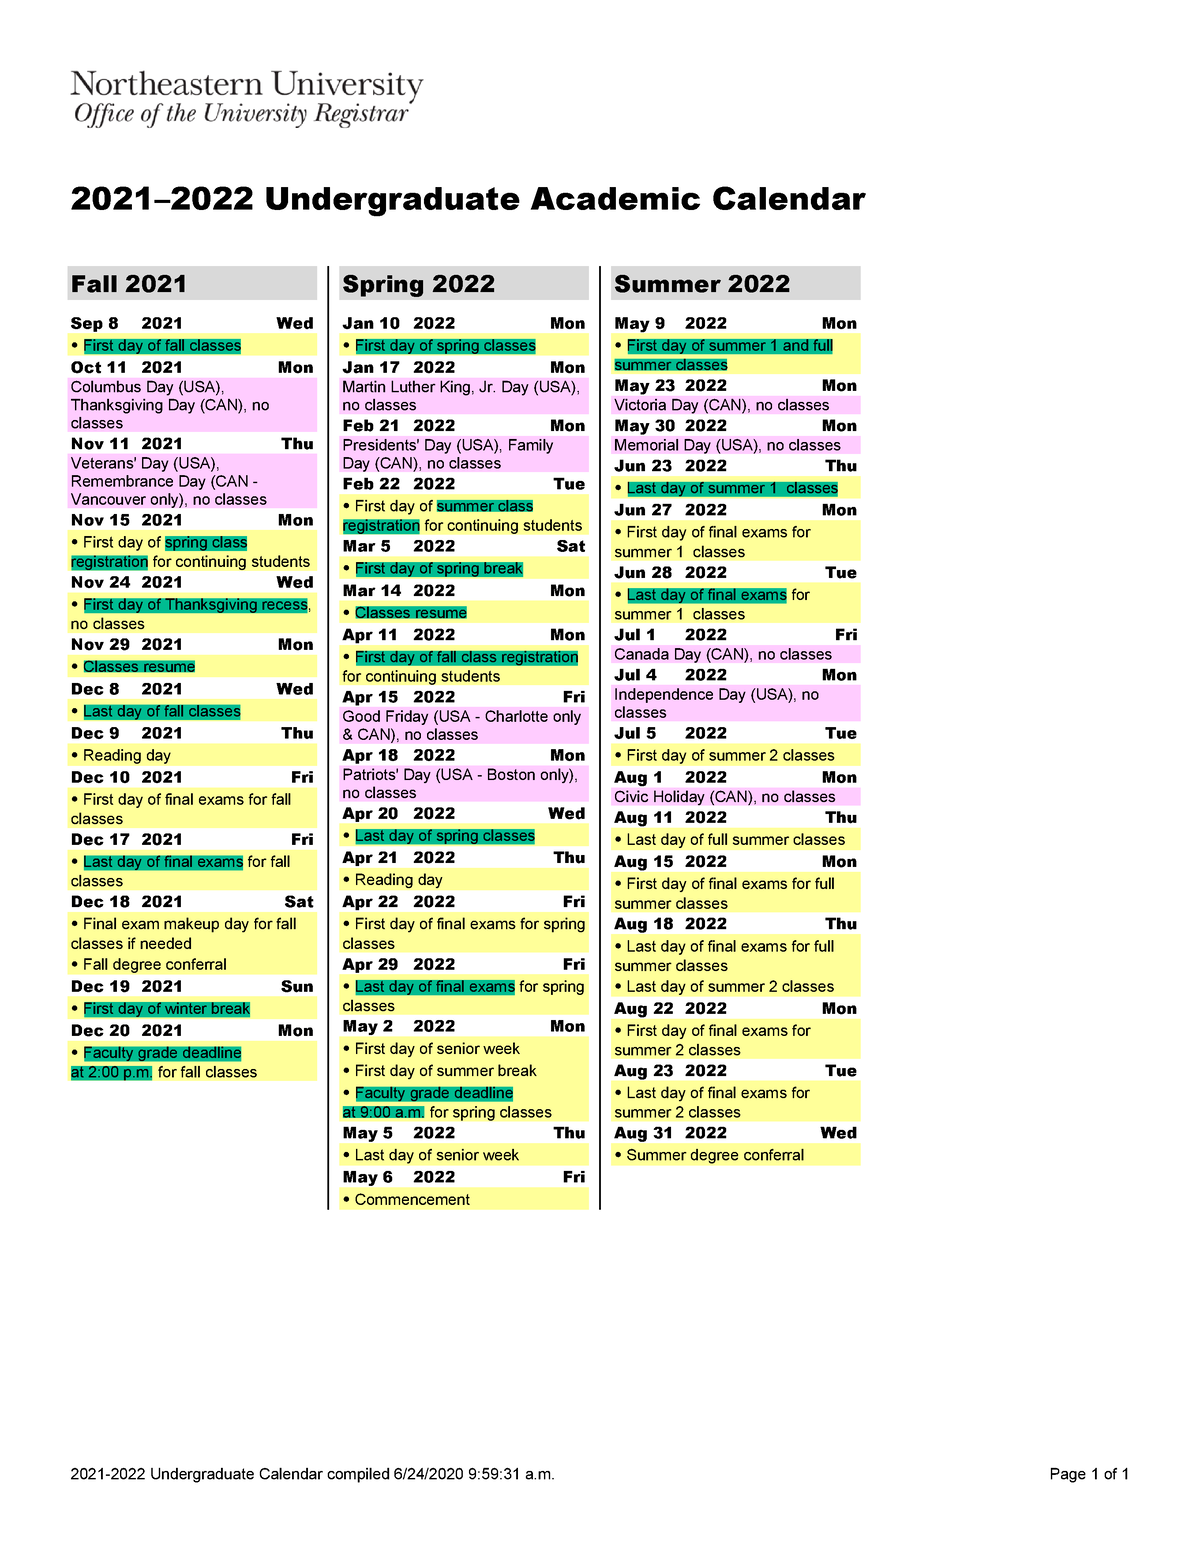 Neu Calendar 2022 2021-2022 Northeastern Calendar - 2021 -2022 Undergraduate Calendar  Compiled 6/24/2020 9:59:31 A. - Studocu